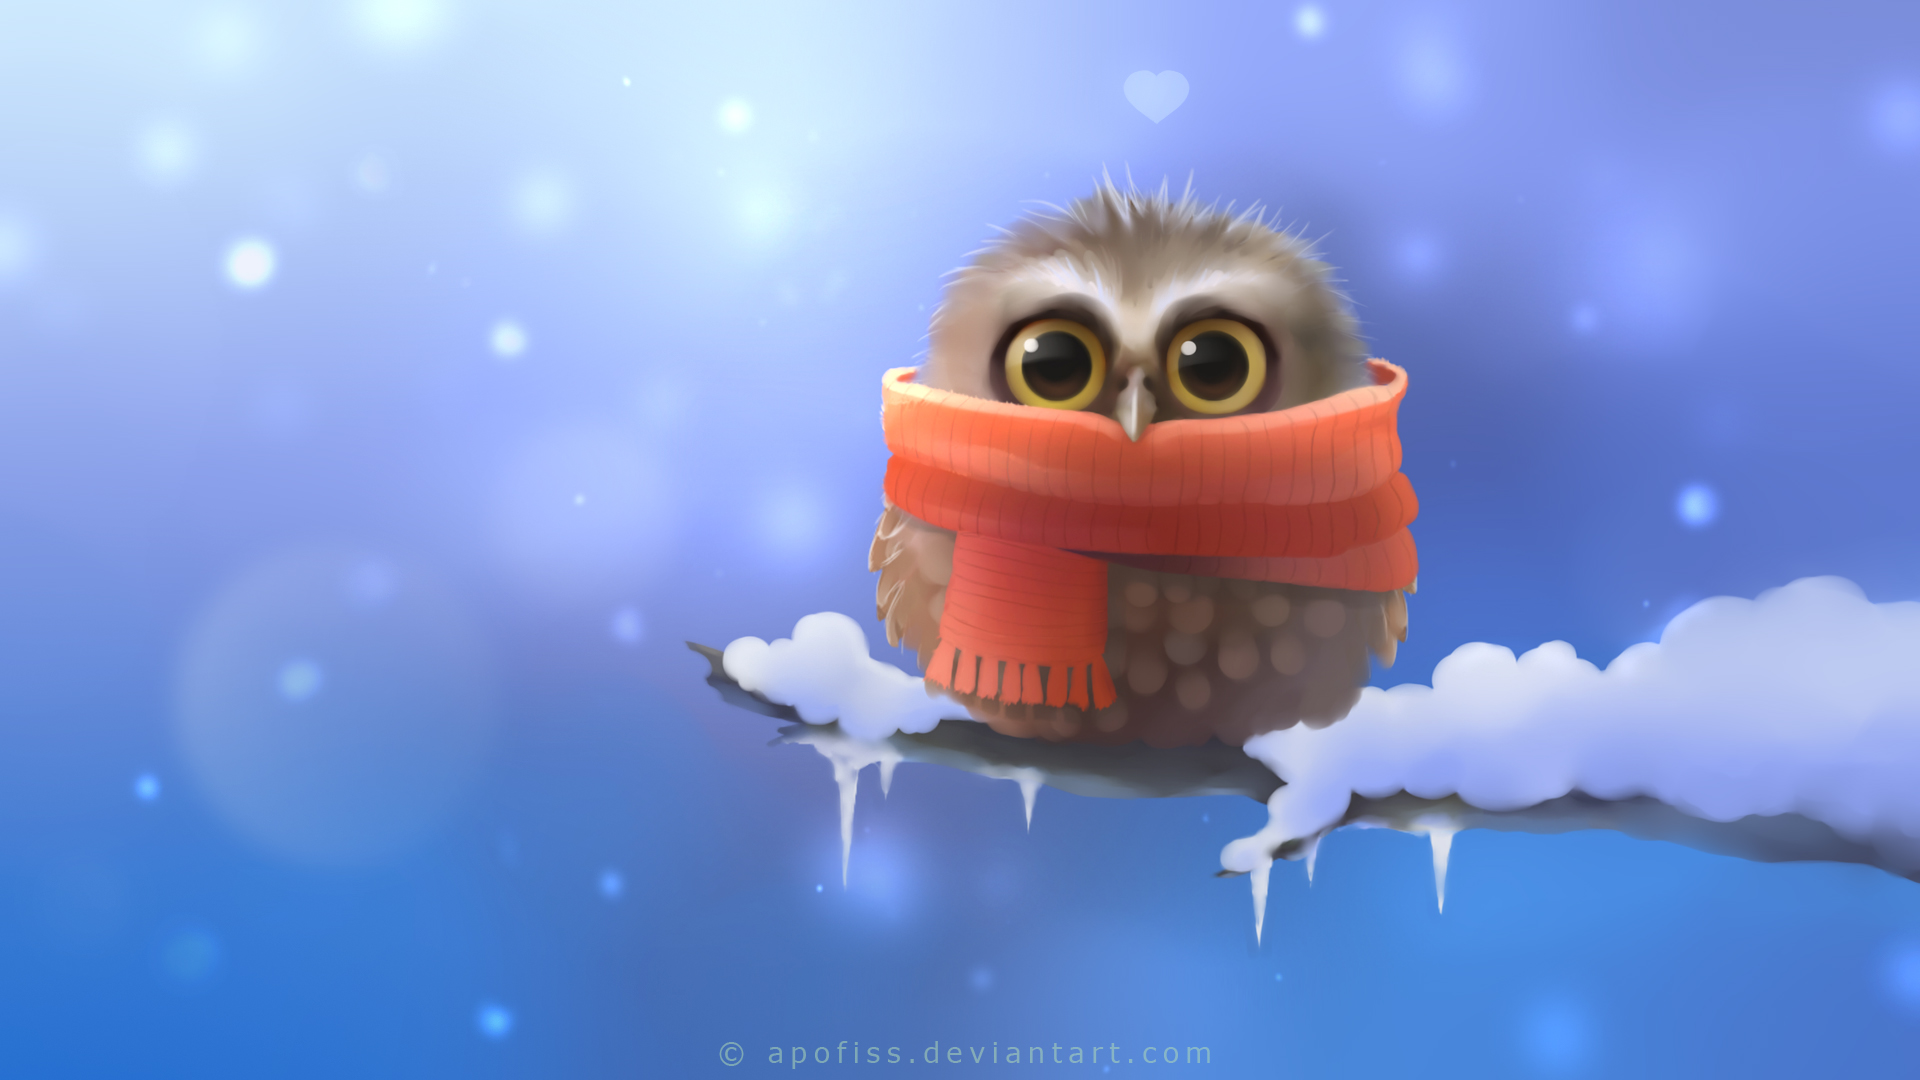 73+] Cute Owl Wallpaper - WallpaperSafari